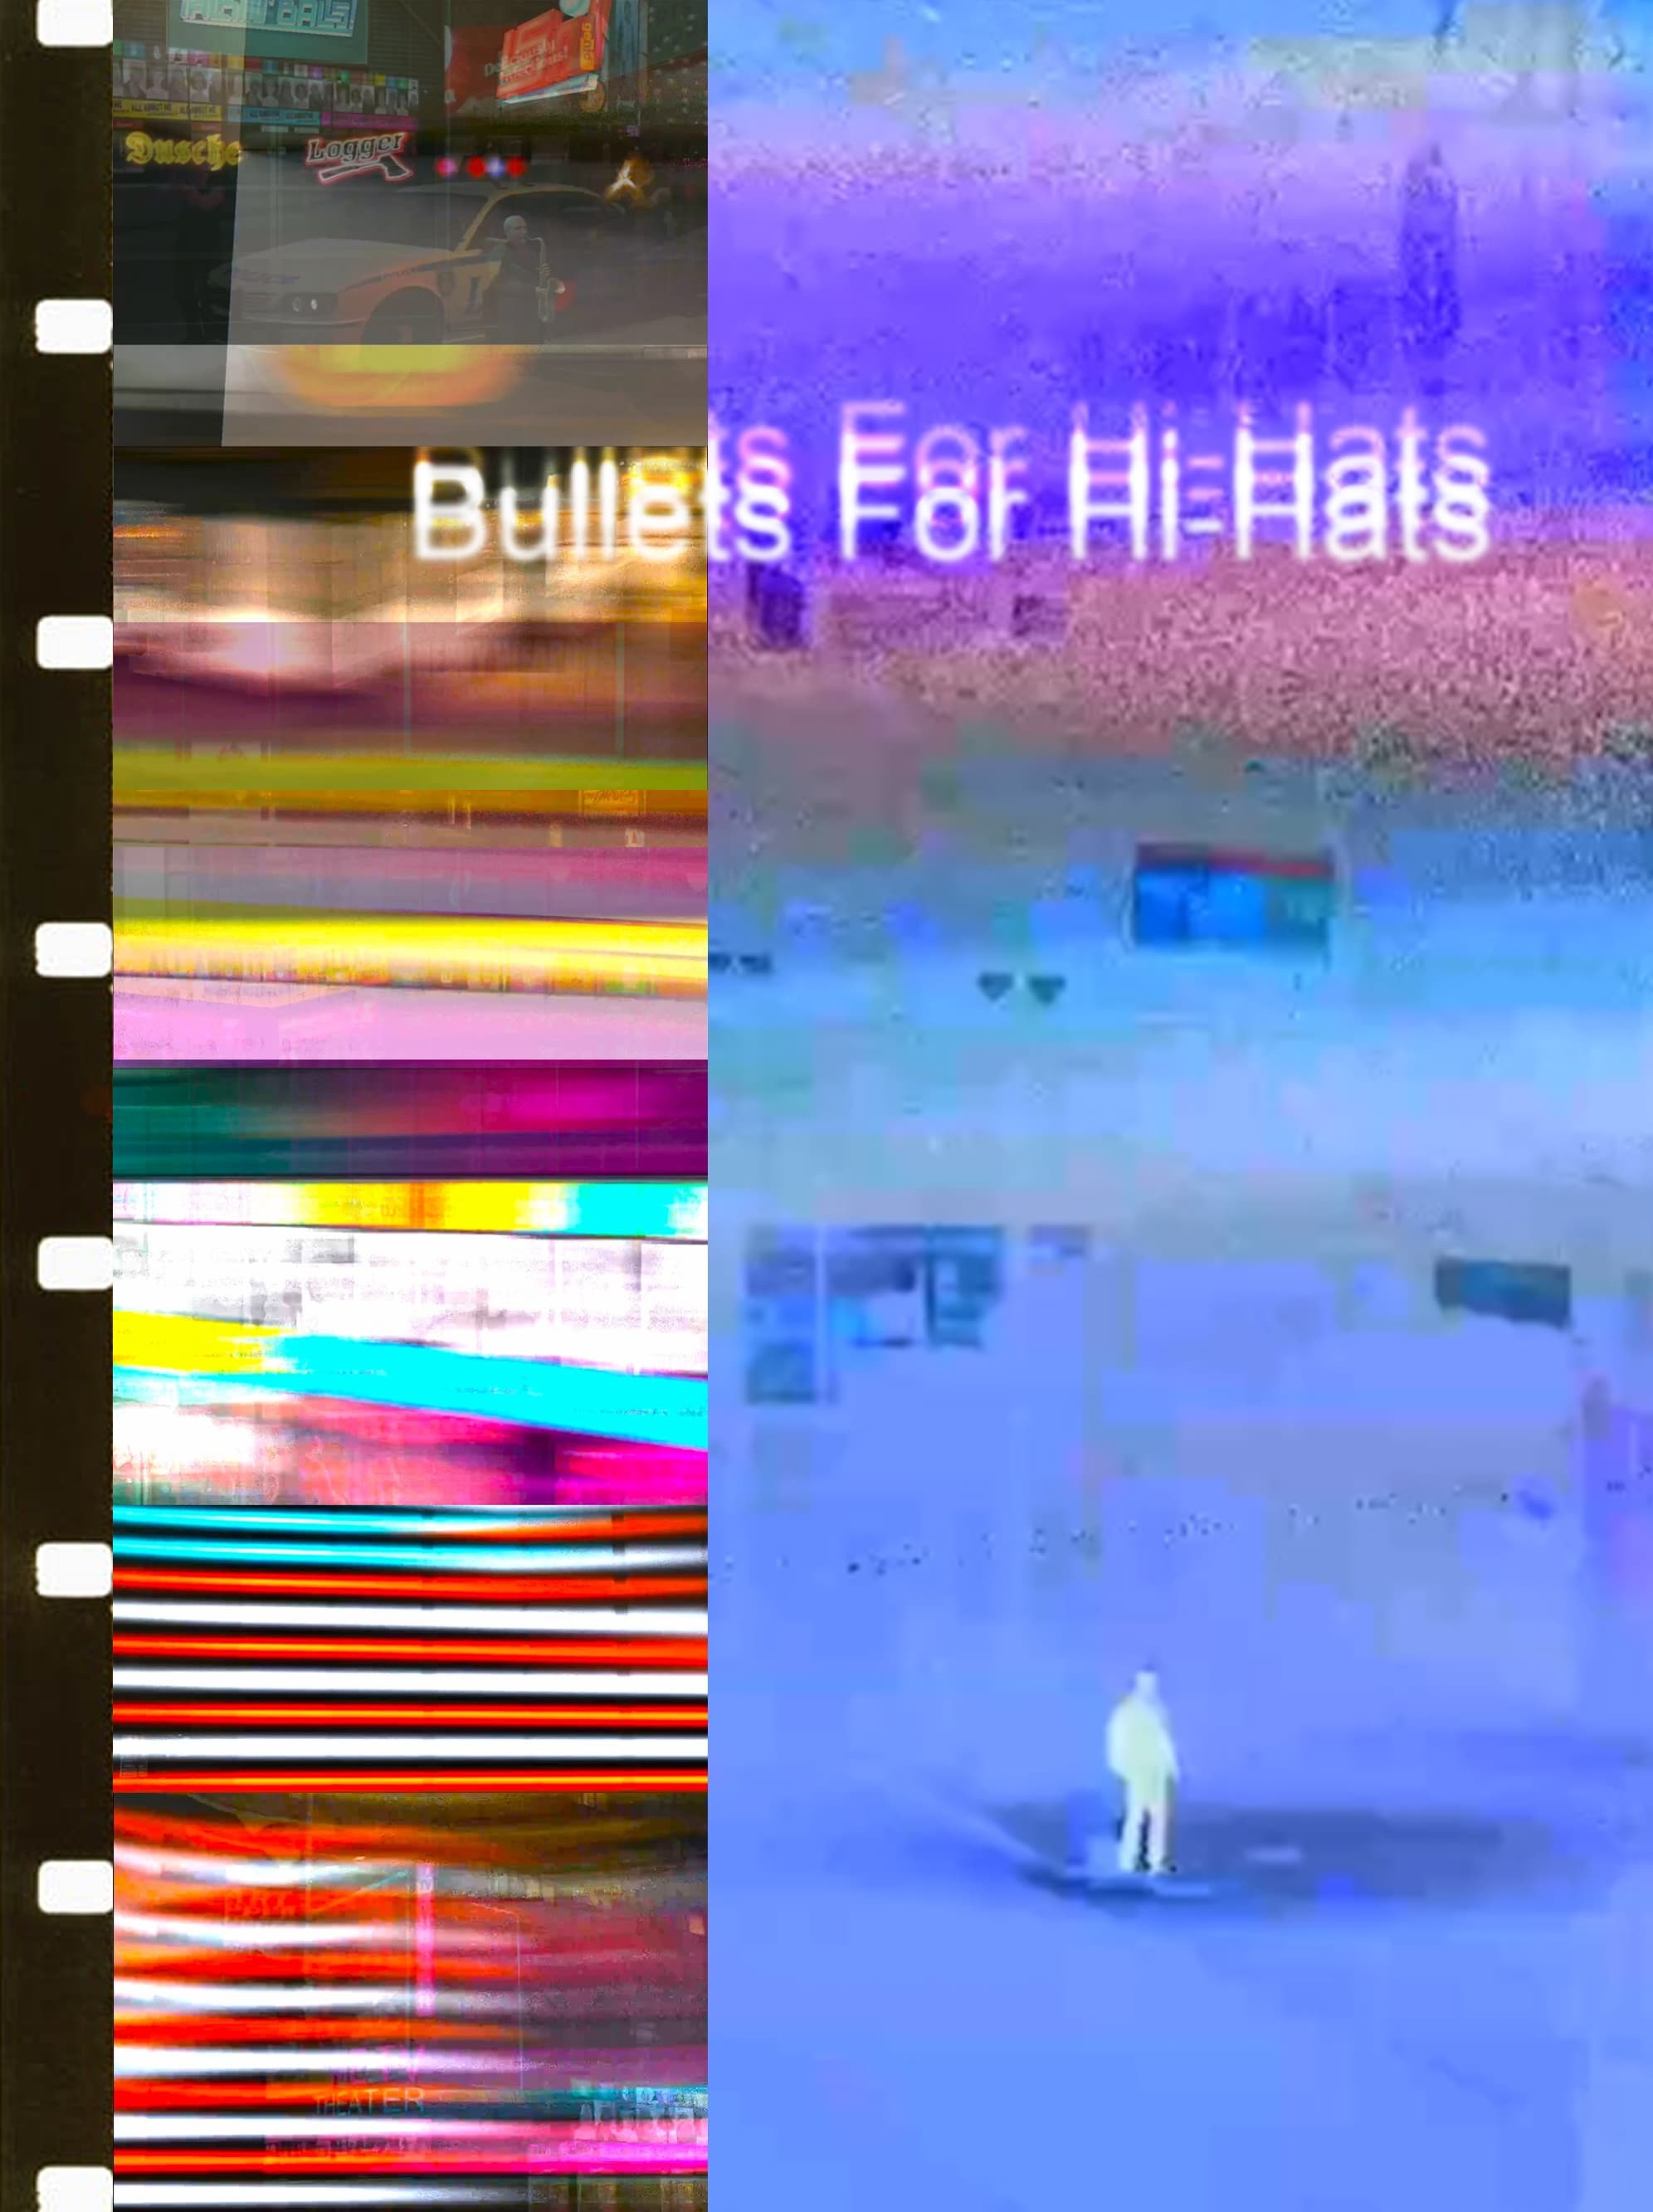 Bullets For Hi-Hats